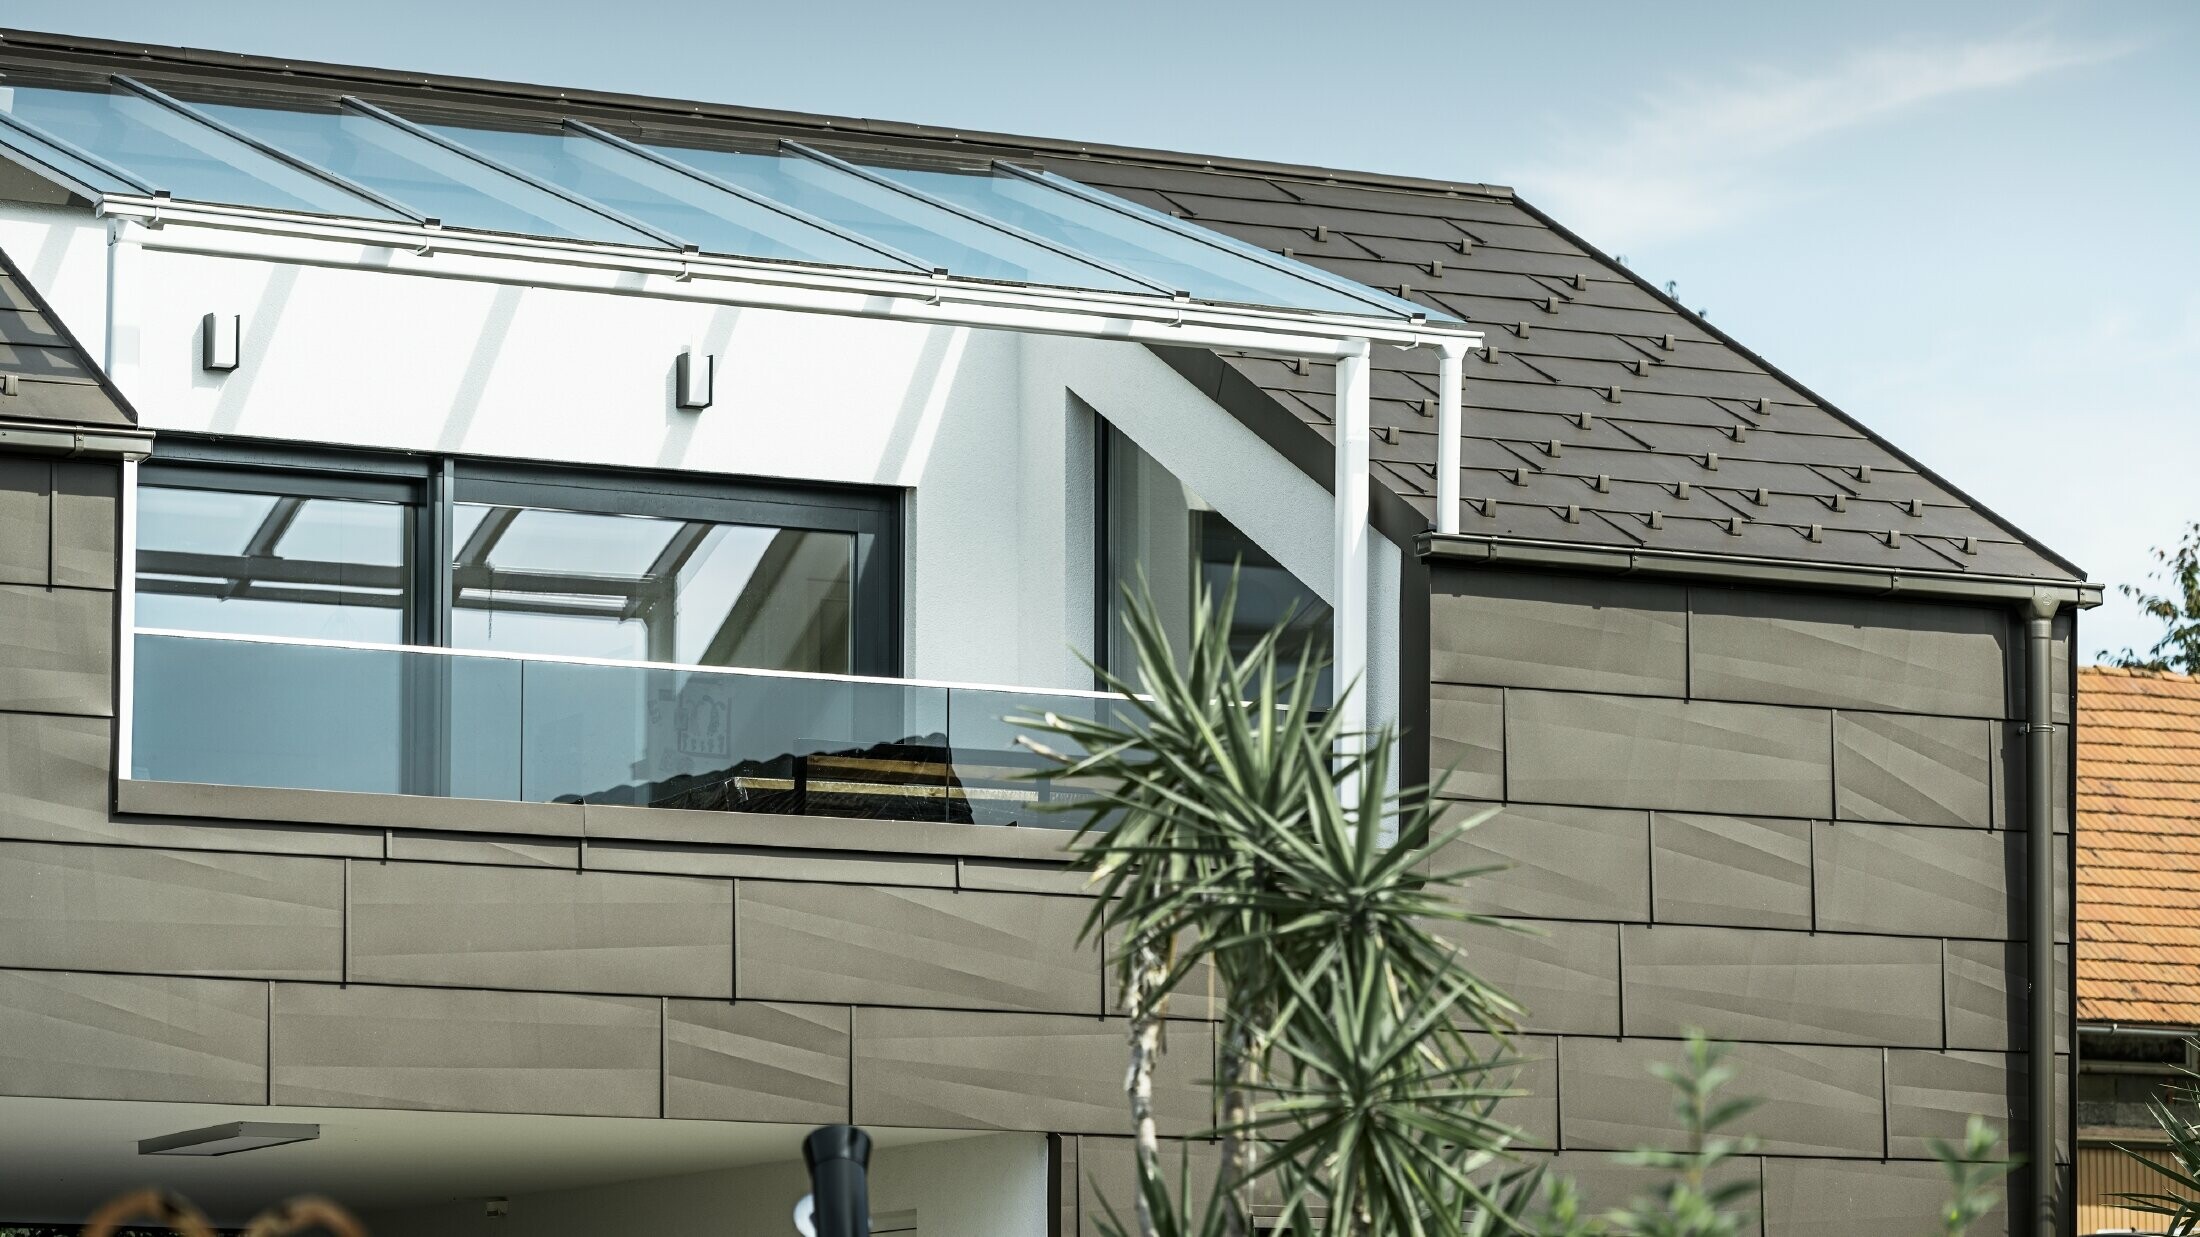 Extension avec terrasse de toit revêtue du système complet PREFA ; pour le toit et la façade, le choix s'est porté sur le panneau de toiture et de façade FX.12 PREFA. Pour l'écoulement des eaux de pluie, le choix s'est également porté sur la gouttière carrée PREFA avec tuyau de descente PREFA et accessoires complets en brun.